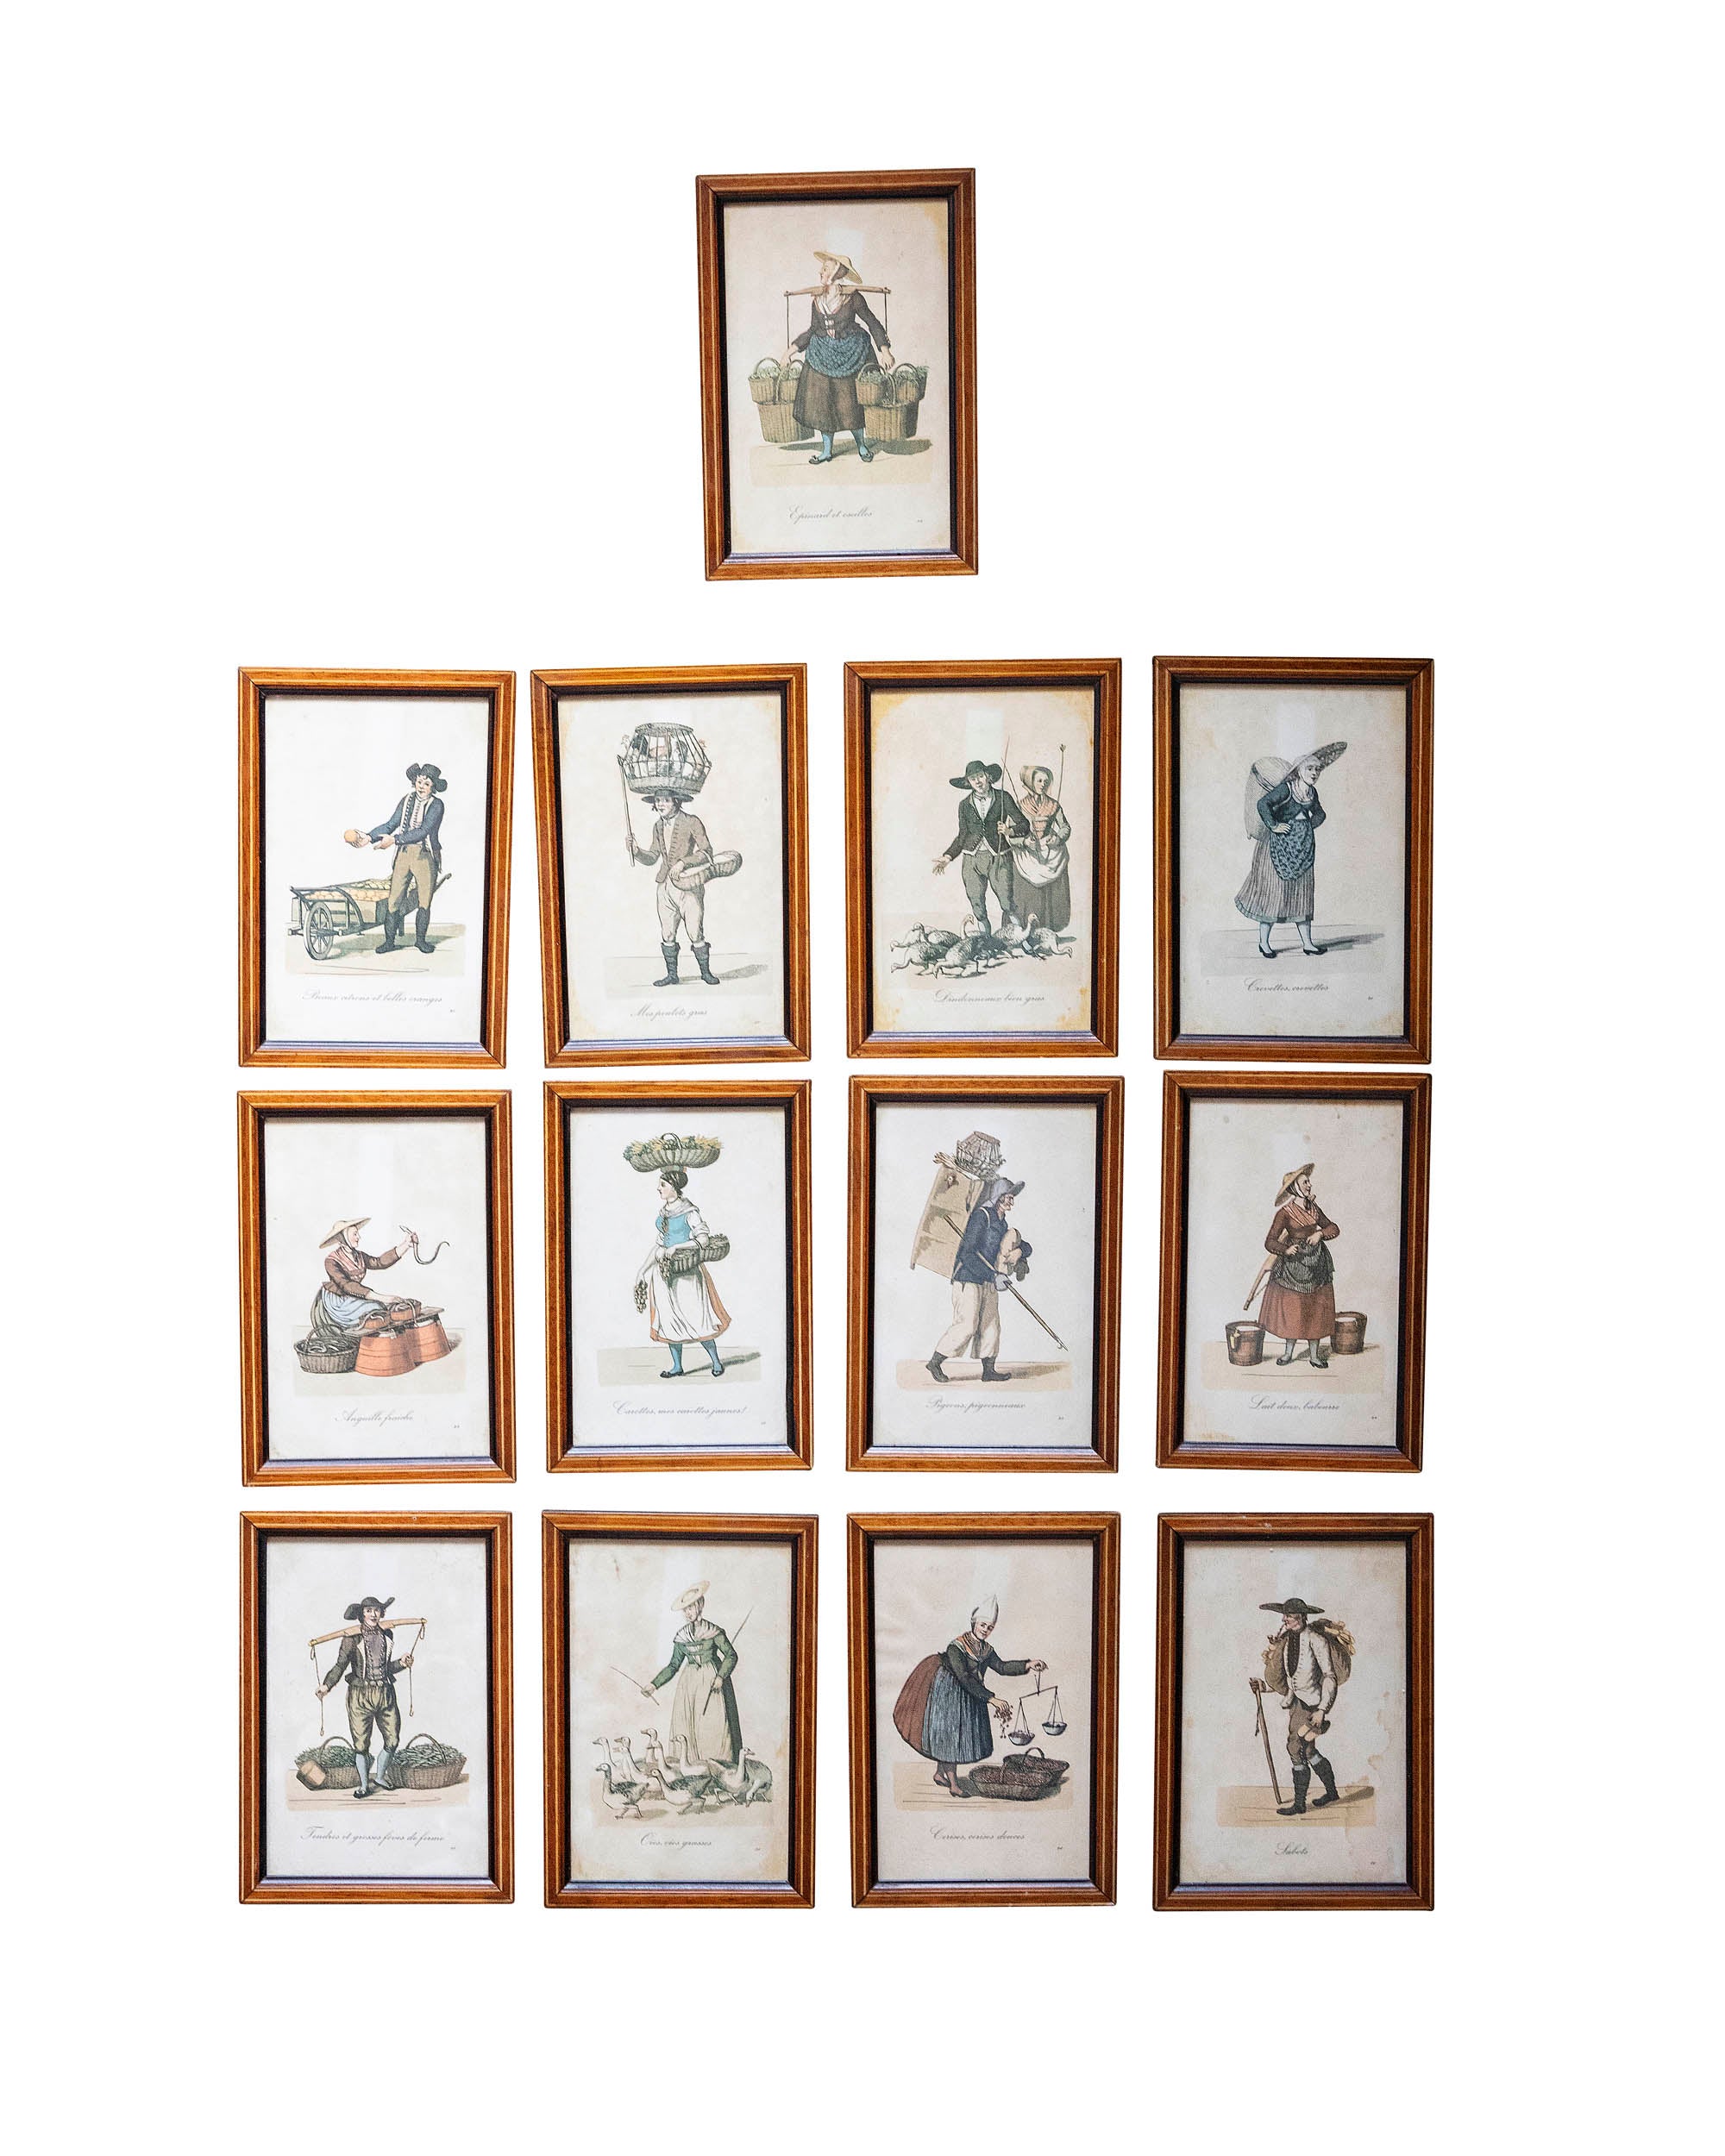 Serie de trece grabados en miniatura de antiguos oficios